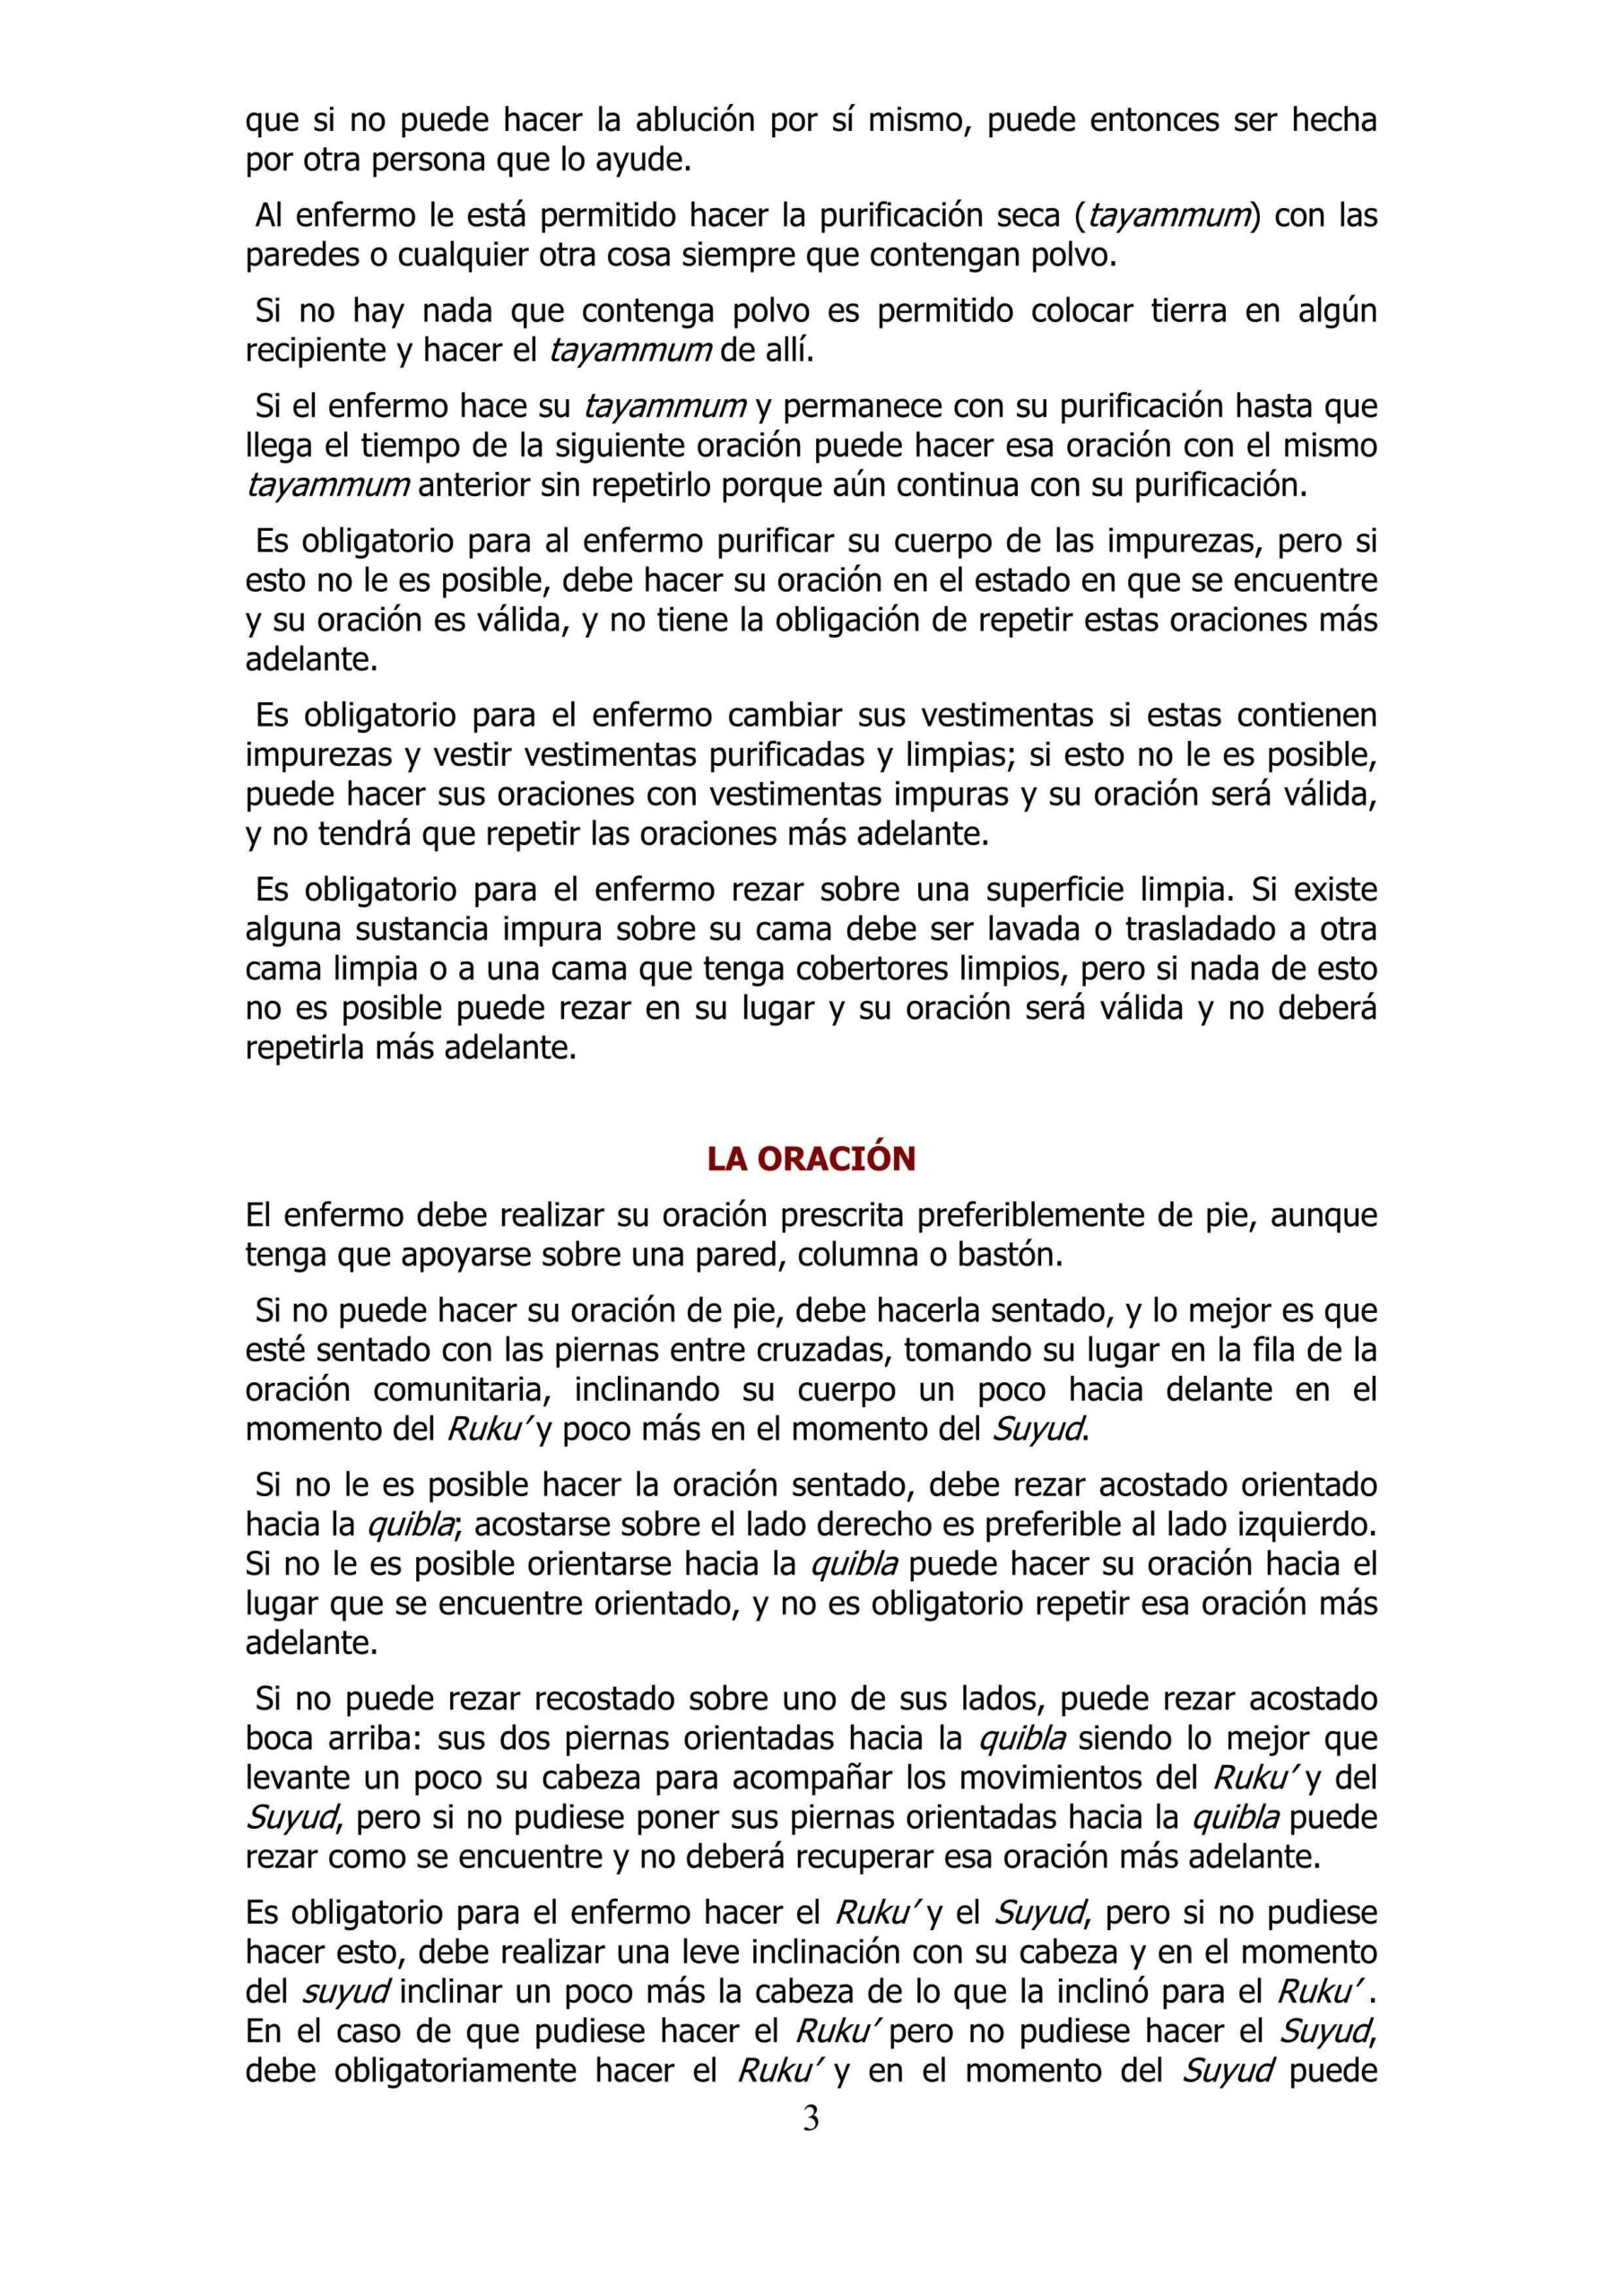 إسباني  طهارة المريض وصلاته  LA PURIFICACIÓN Y LA ORACIÓN DEL ENFERMO.pdf, 4-Sayfa 